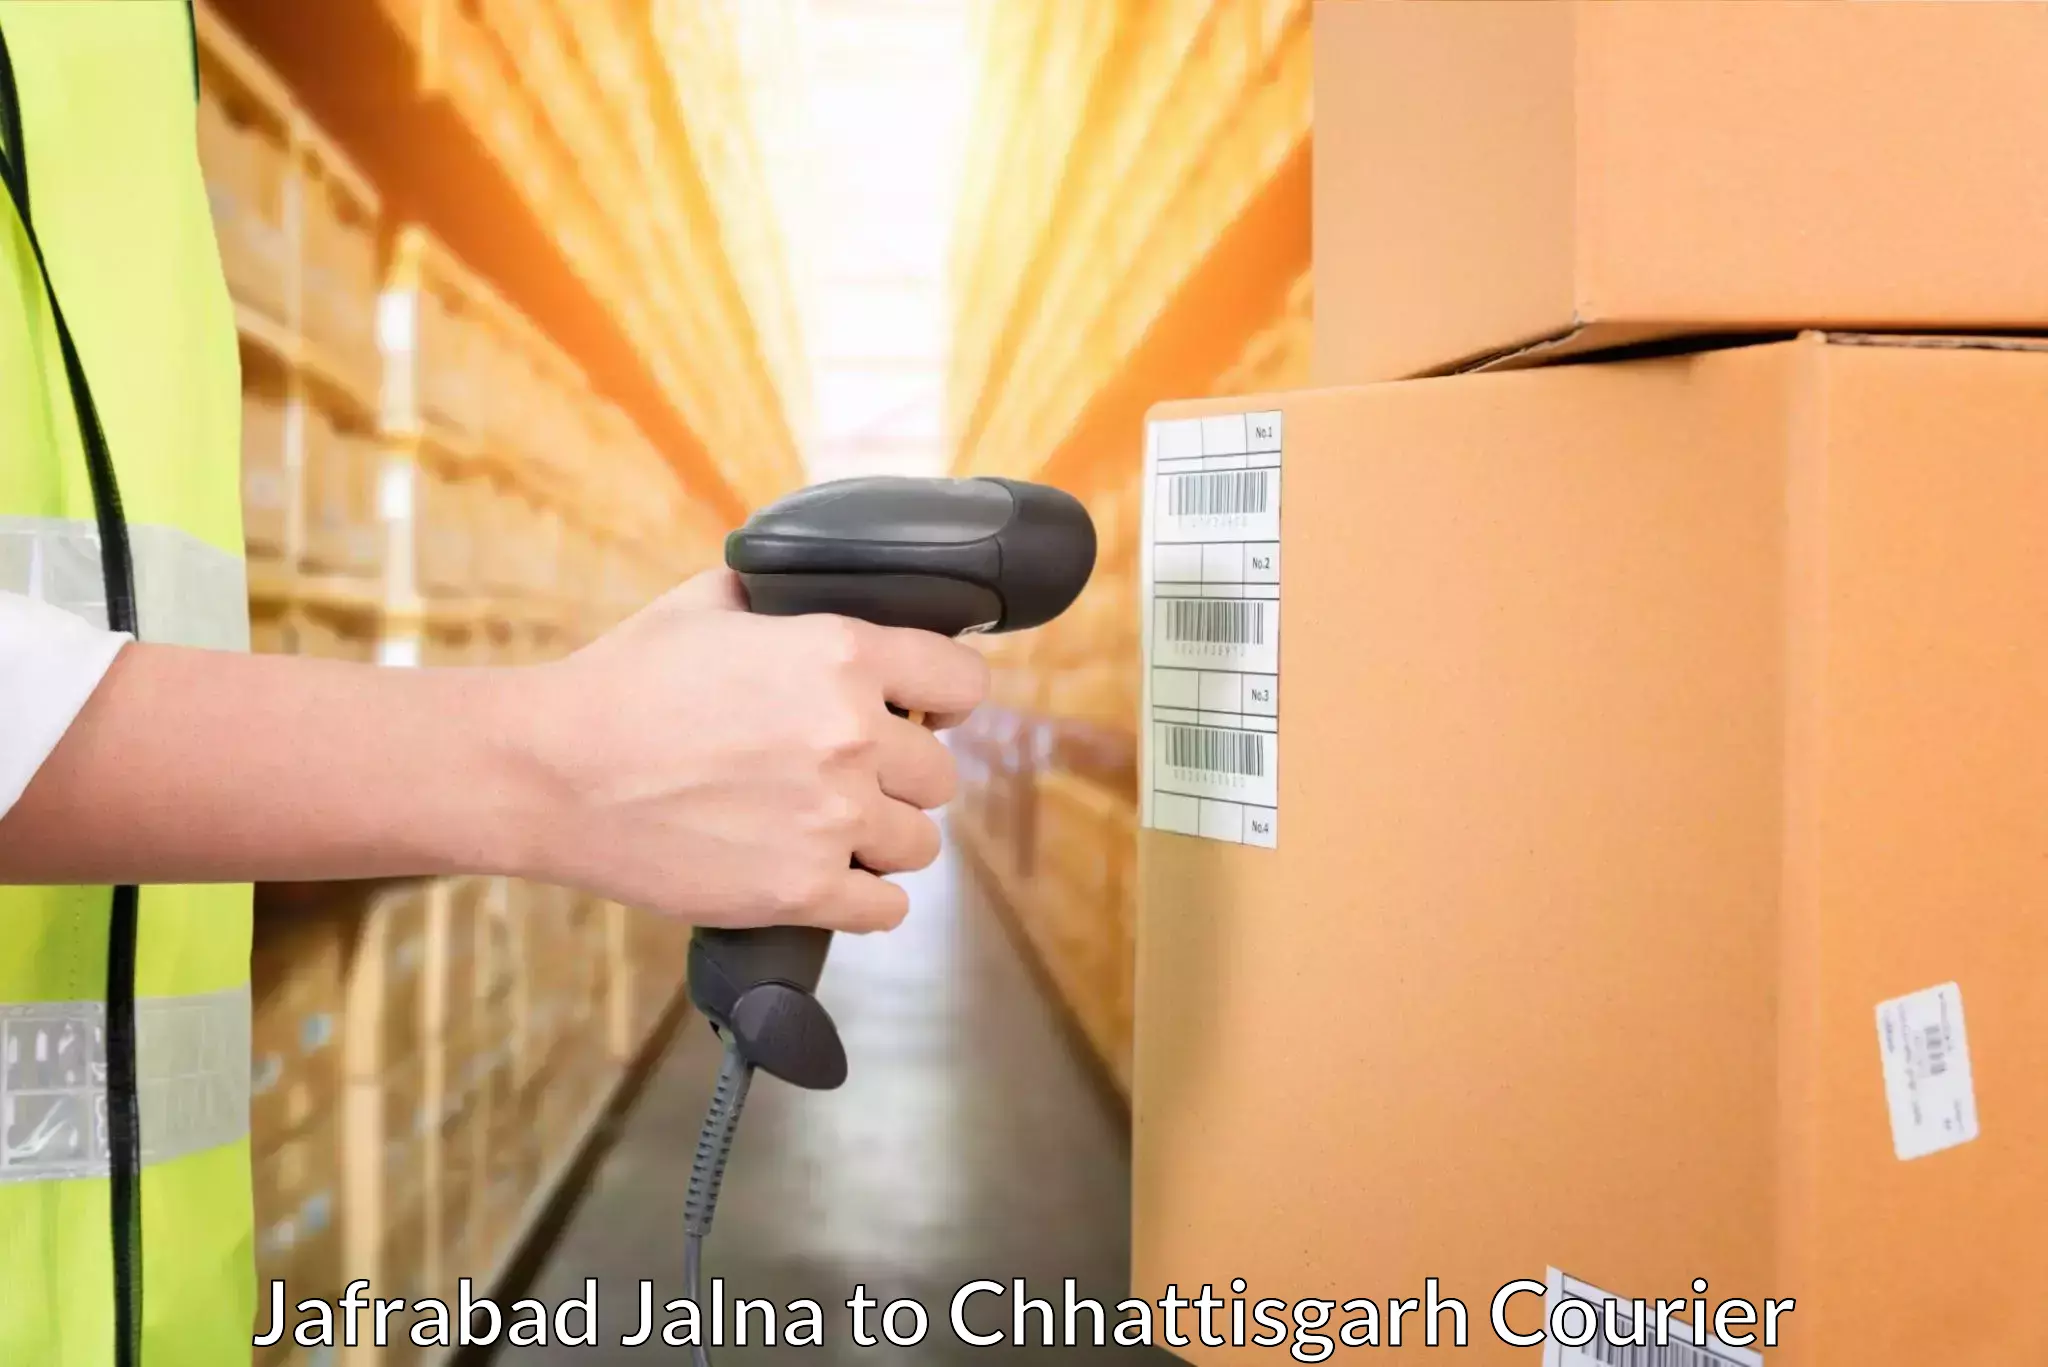 Logistics service provider Jafrabad Jalna to Pendra